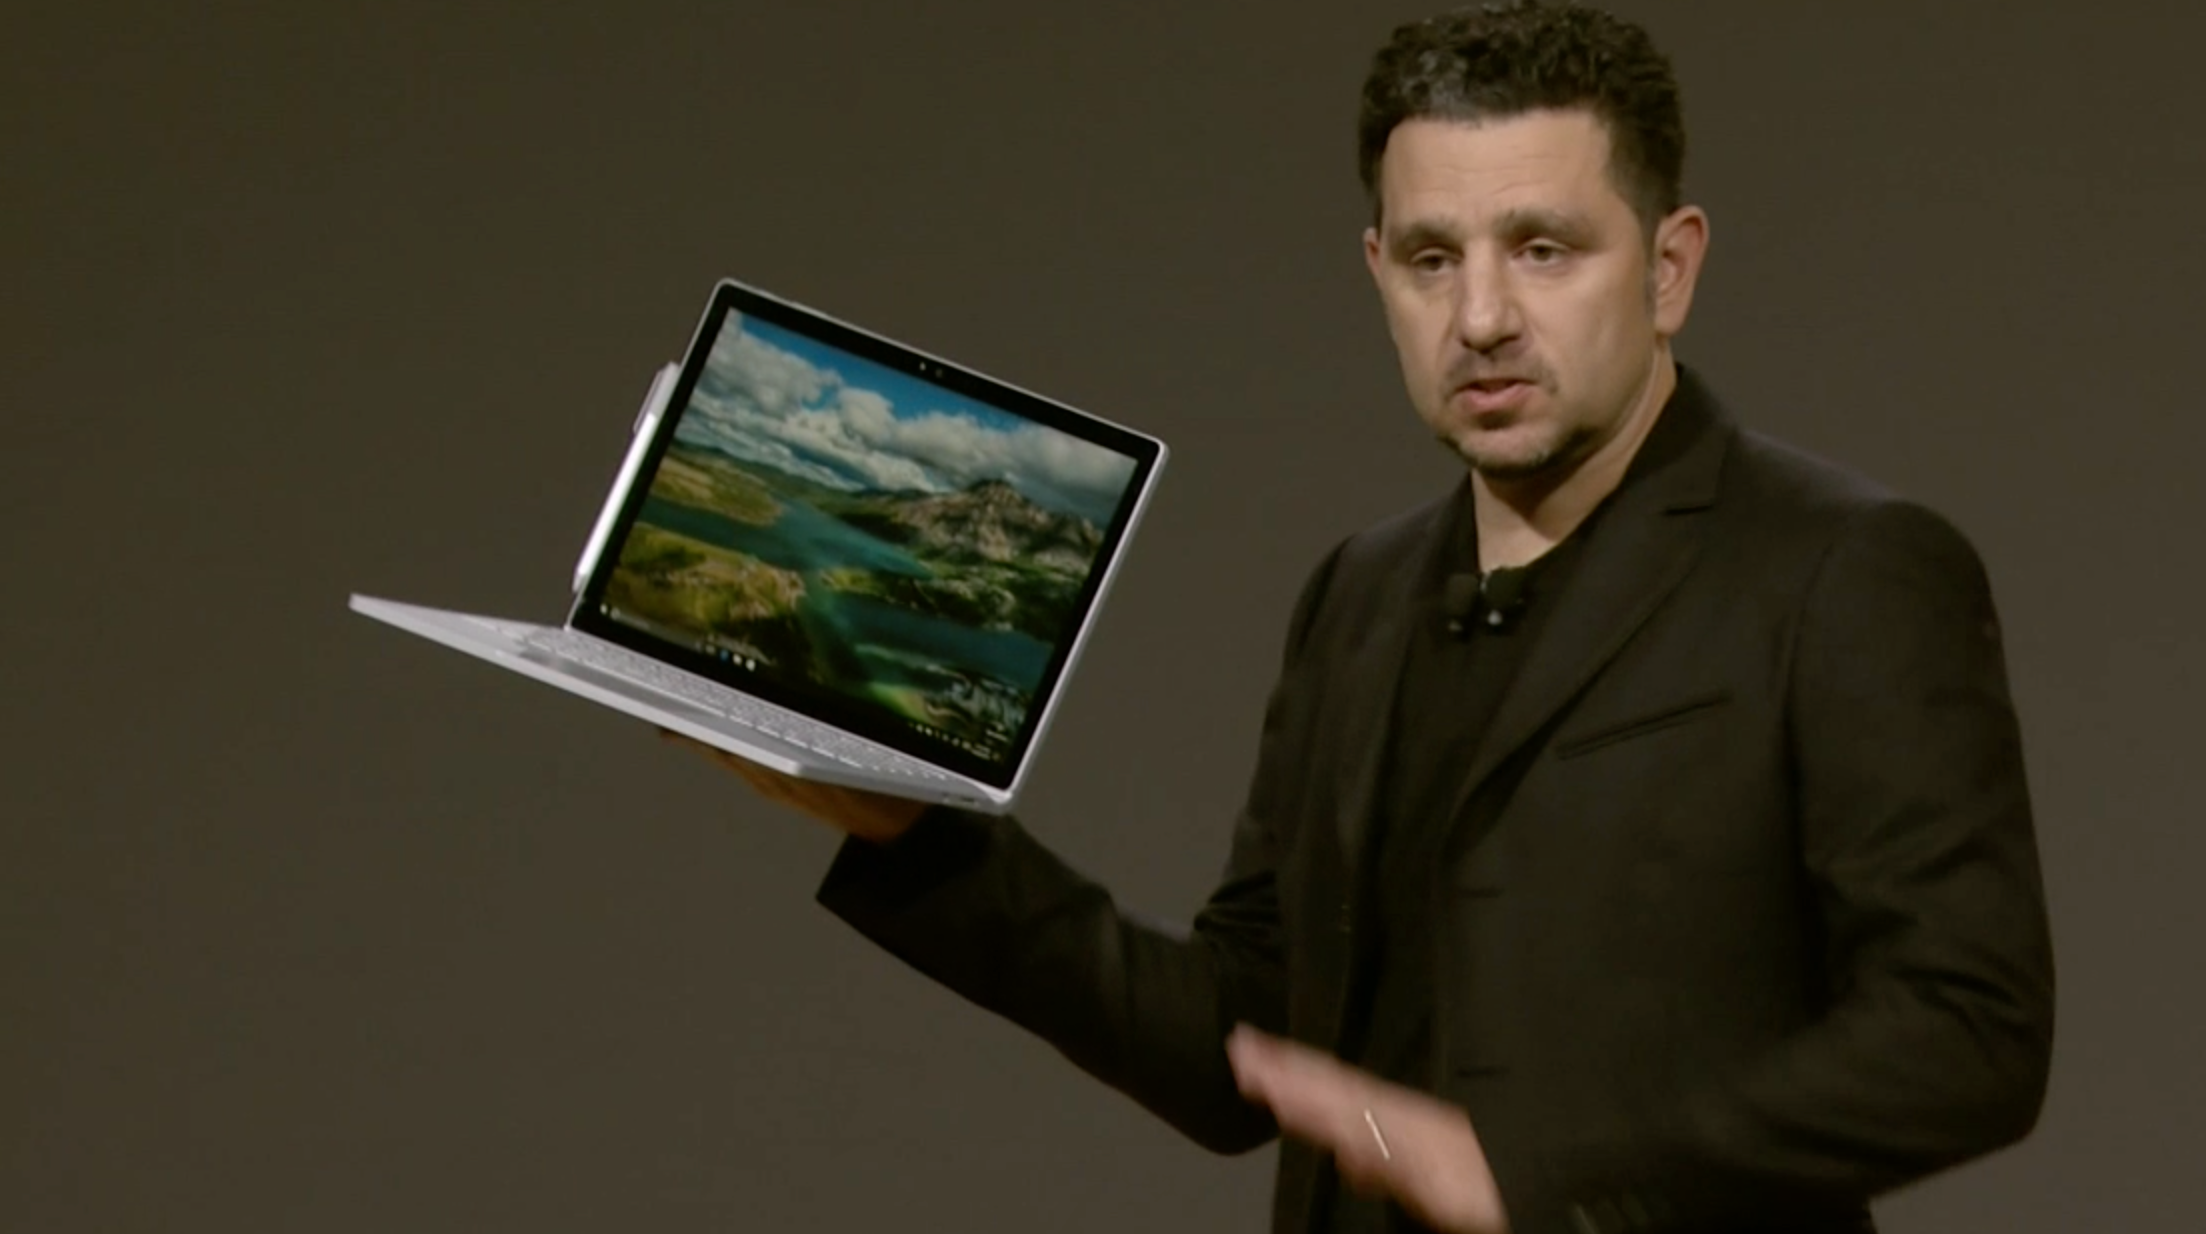 Nye Surface Book med Intel Core i7. Bilde: Stein Jarle Olsen, Tek.no